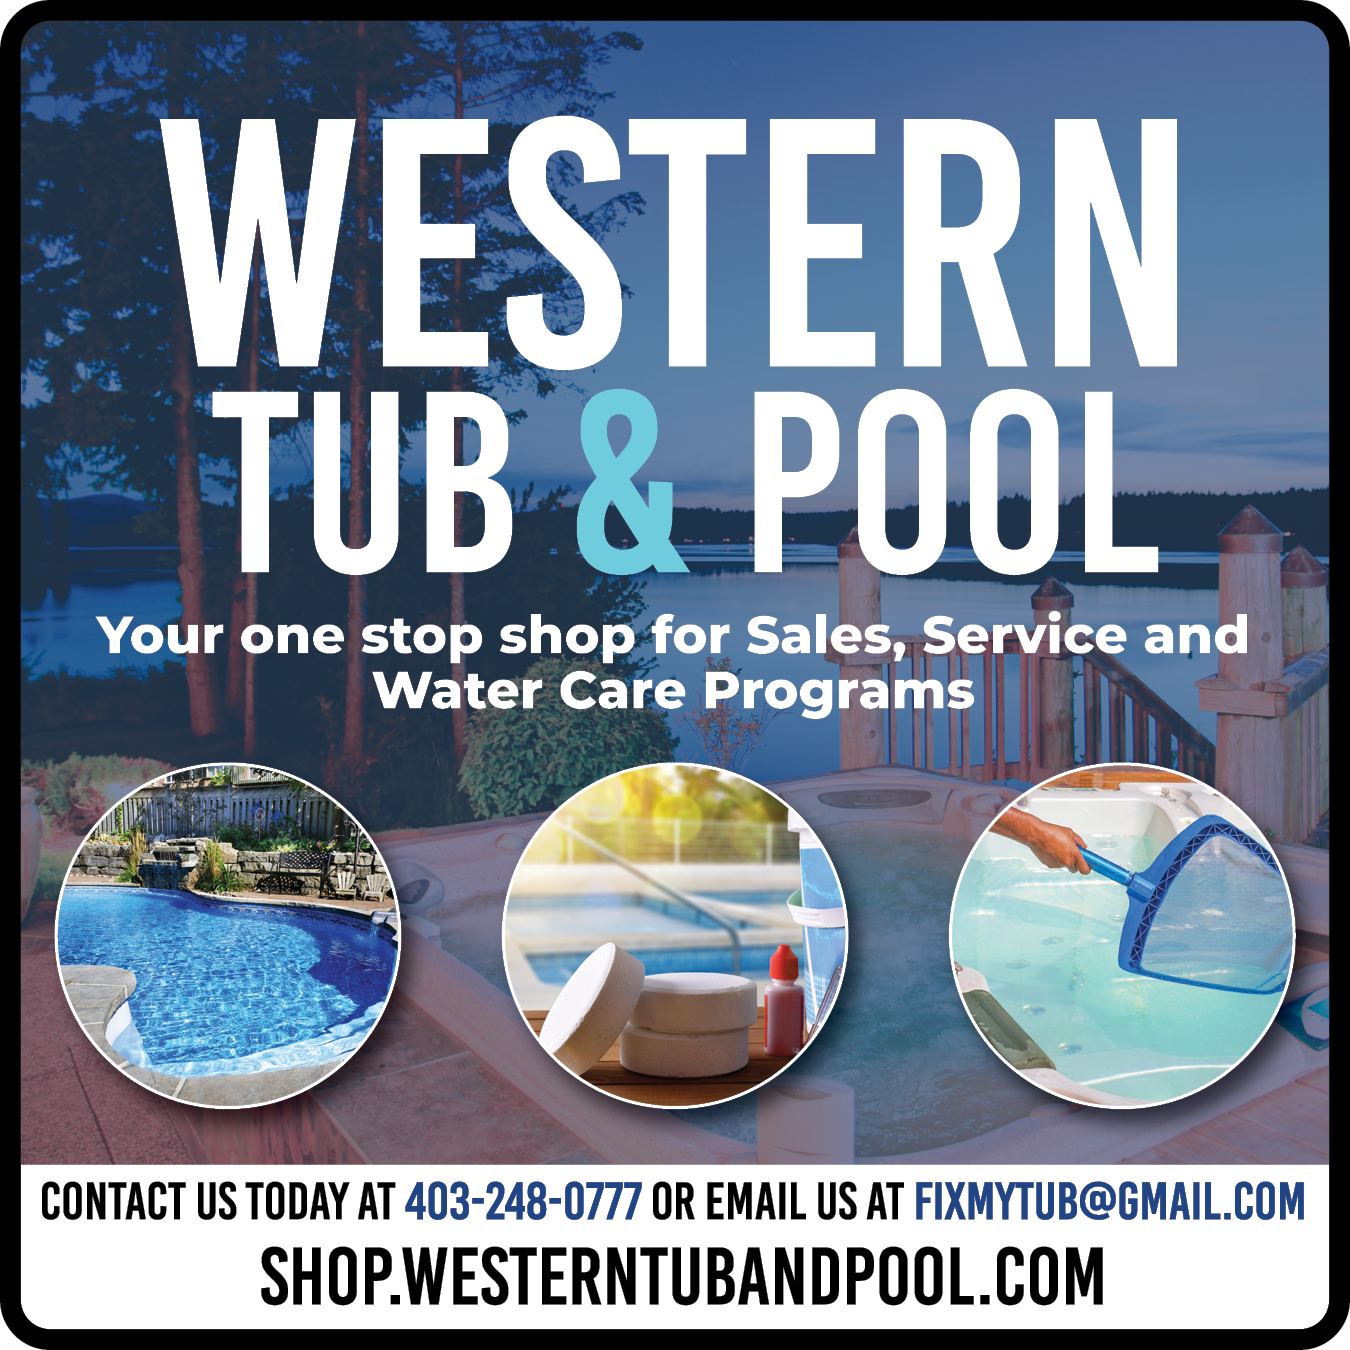 Western Tub & Pool